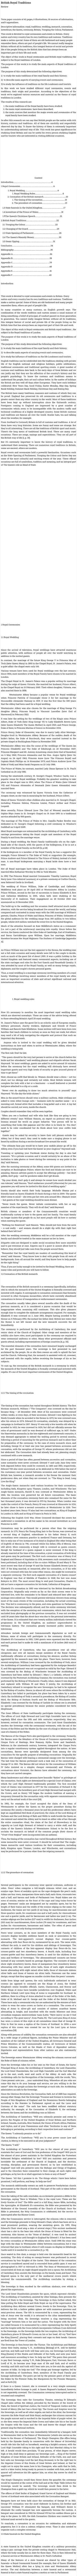 British Royal Traditions